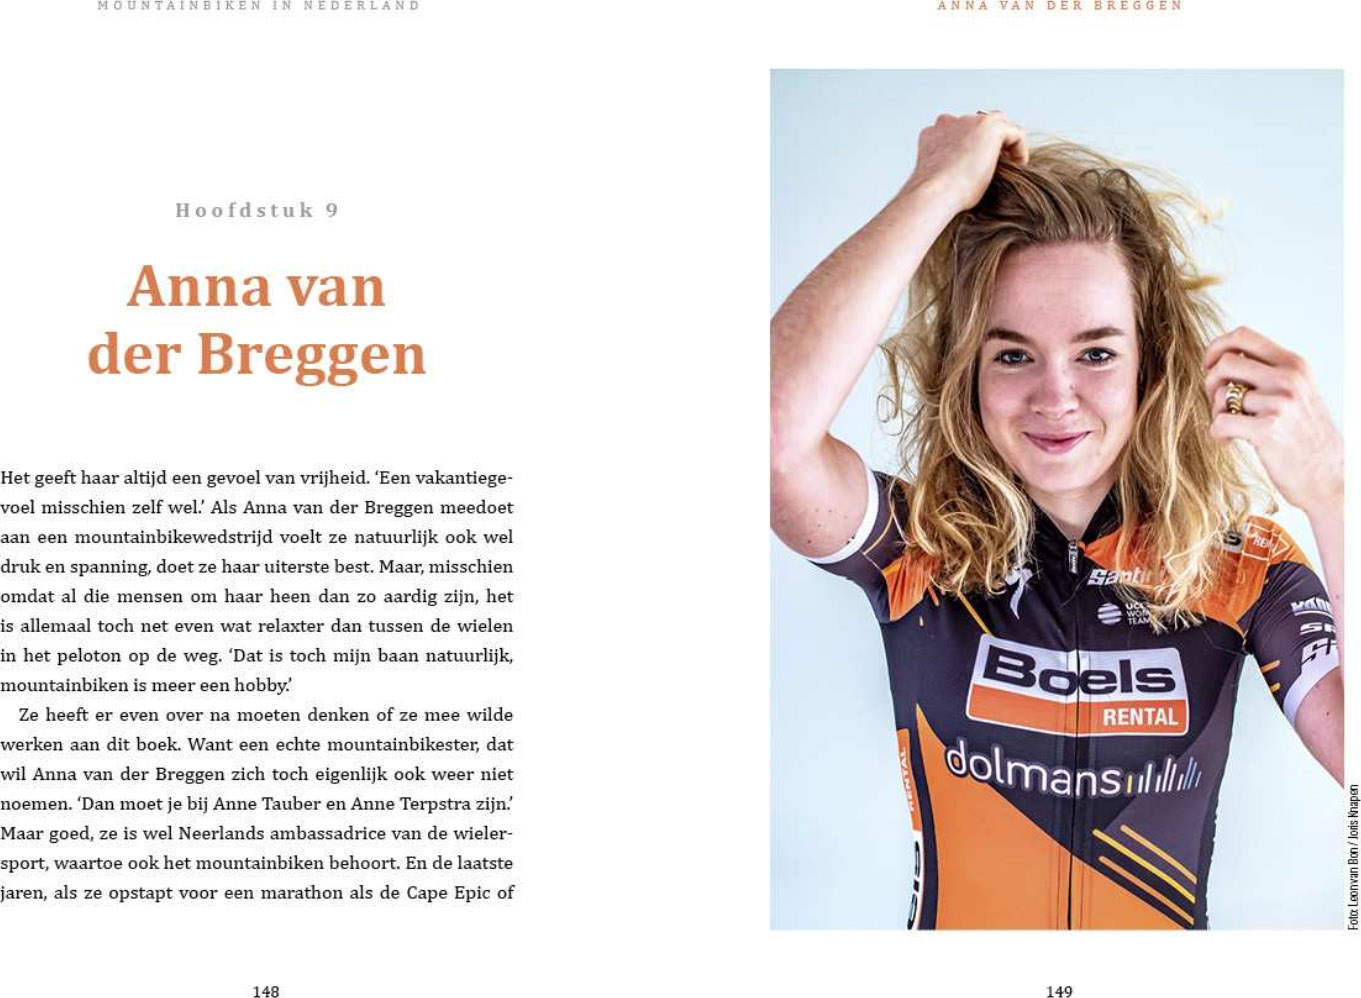 Anne van der Breggen